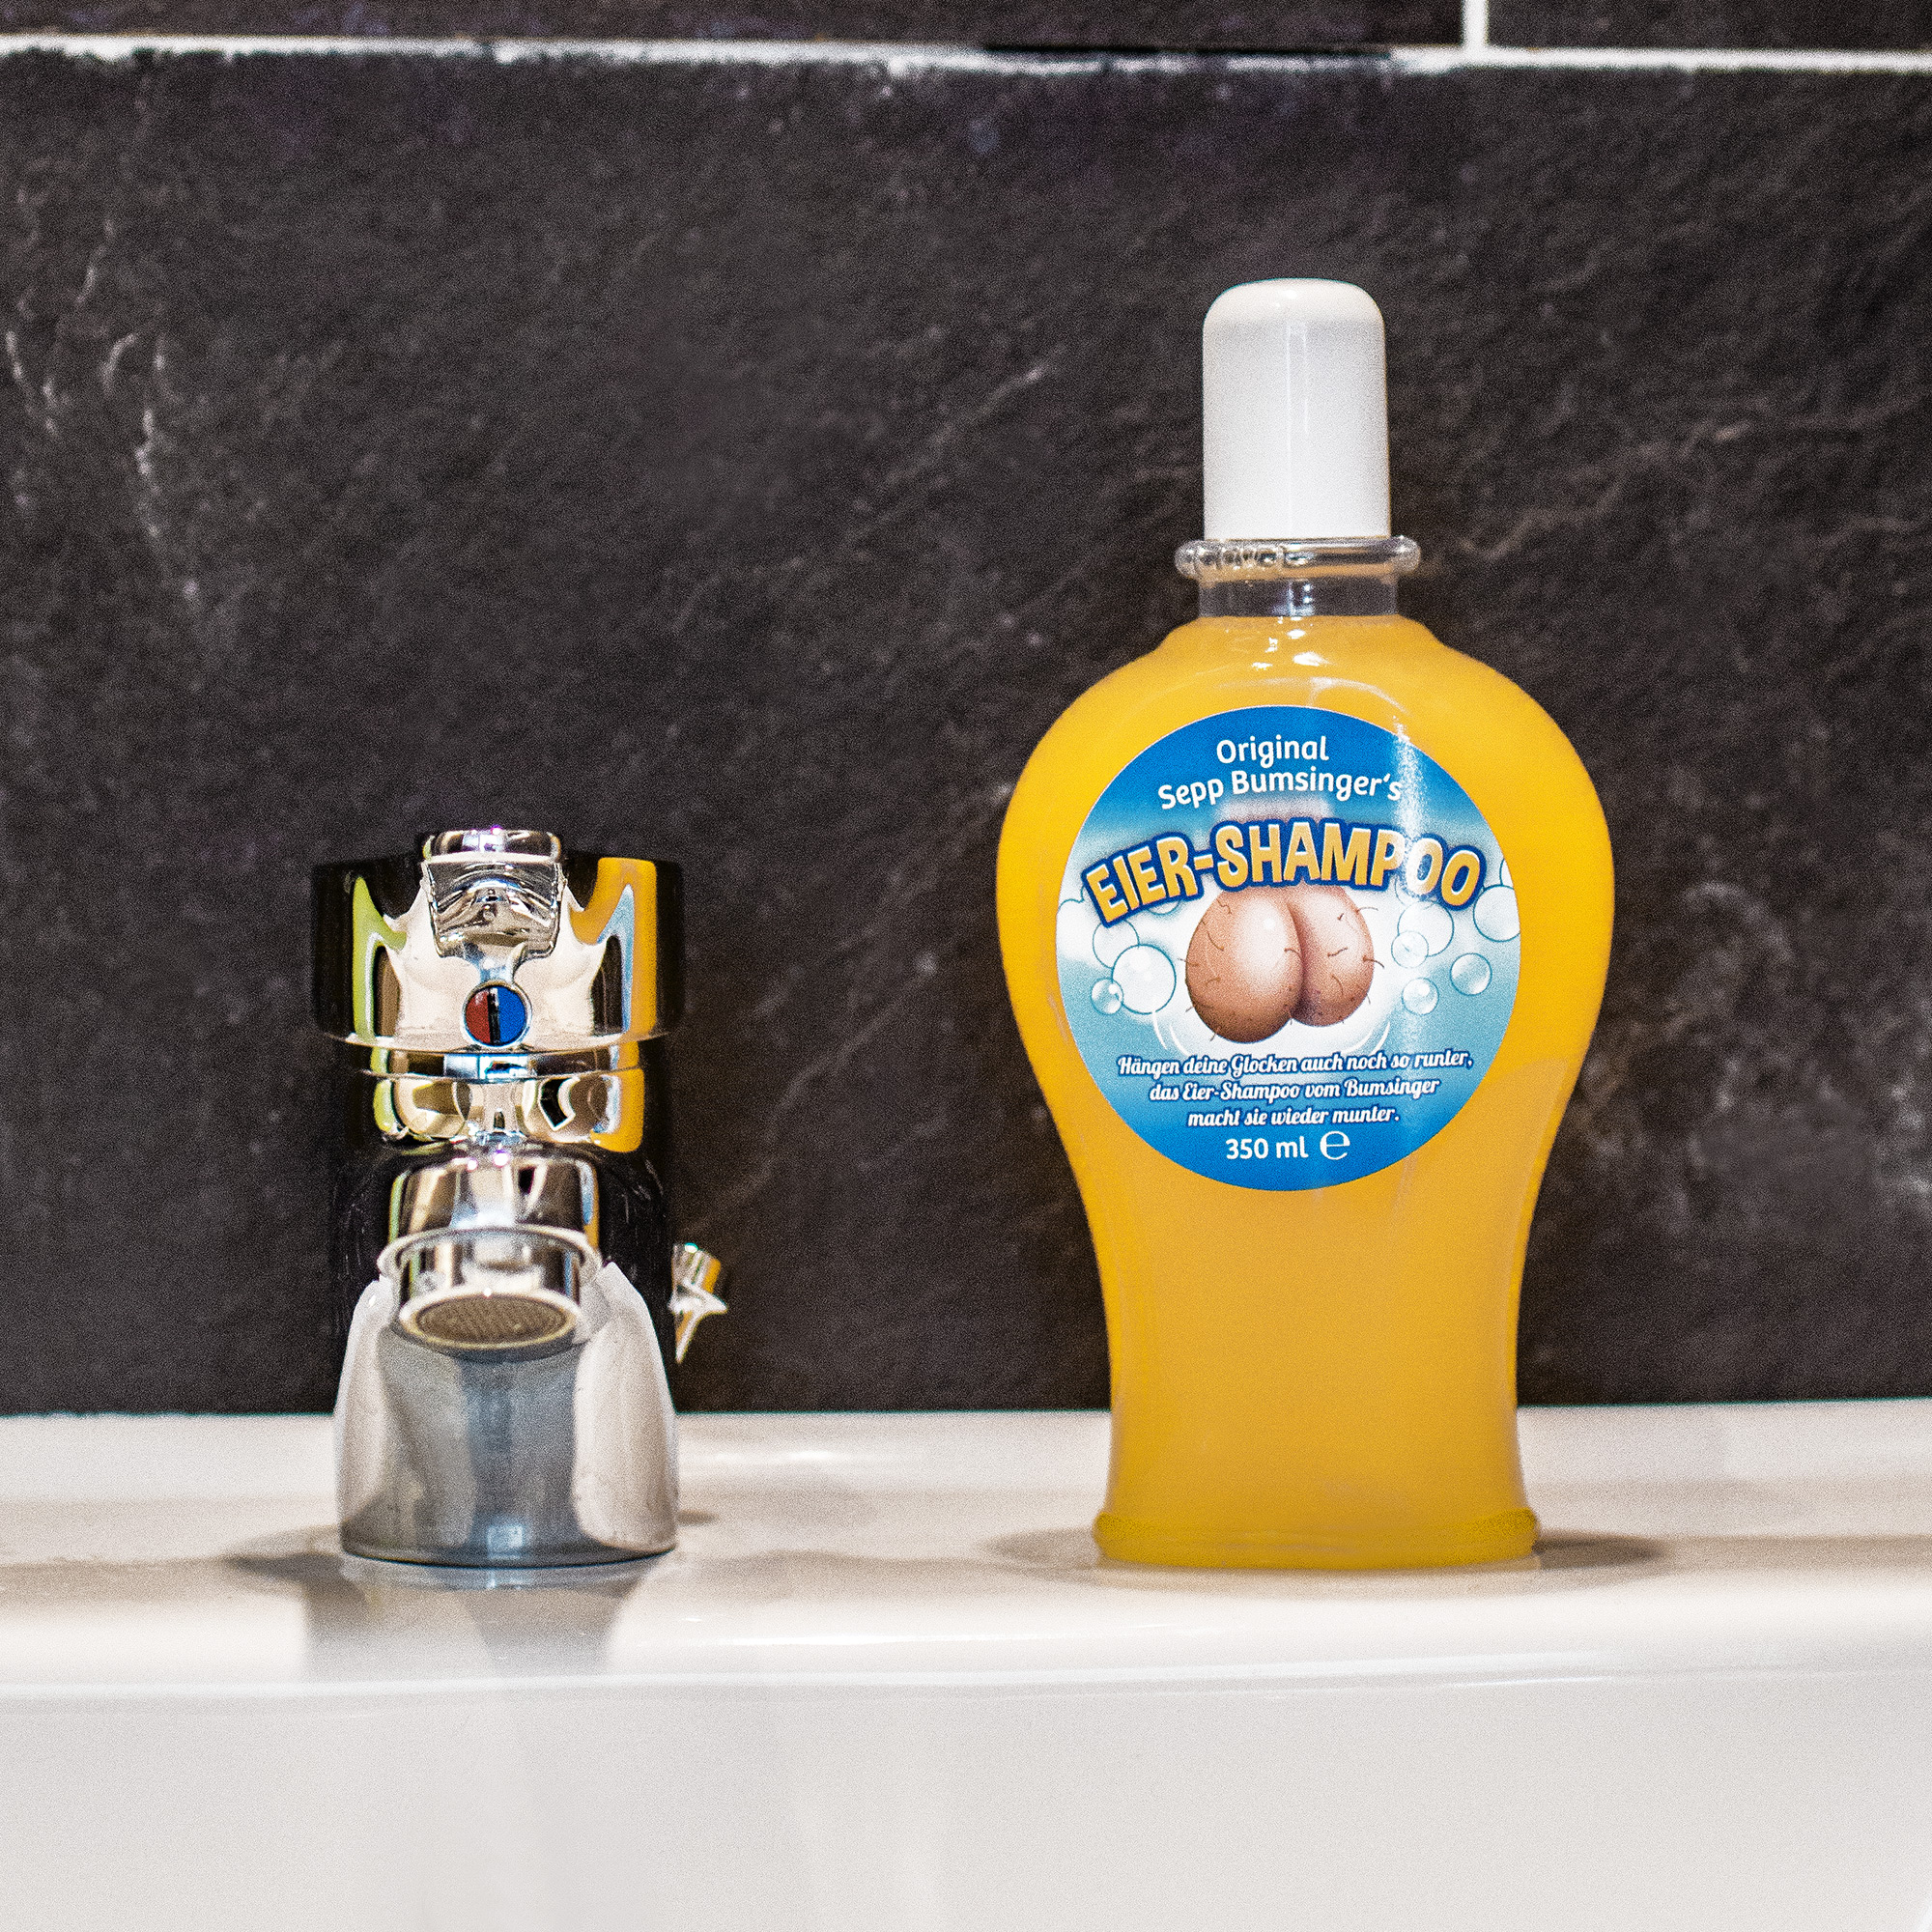 Eier-Shampoo - Das Duschgel für gepflegte Klöten 3739 - 5